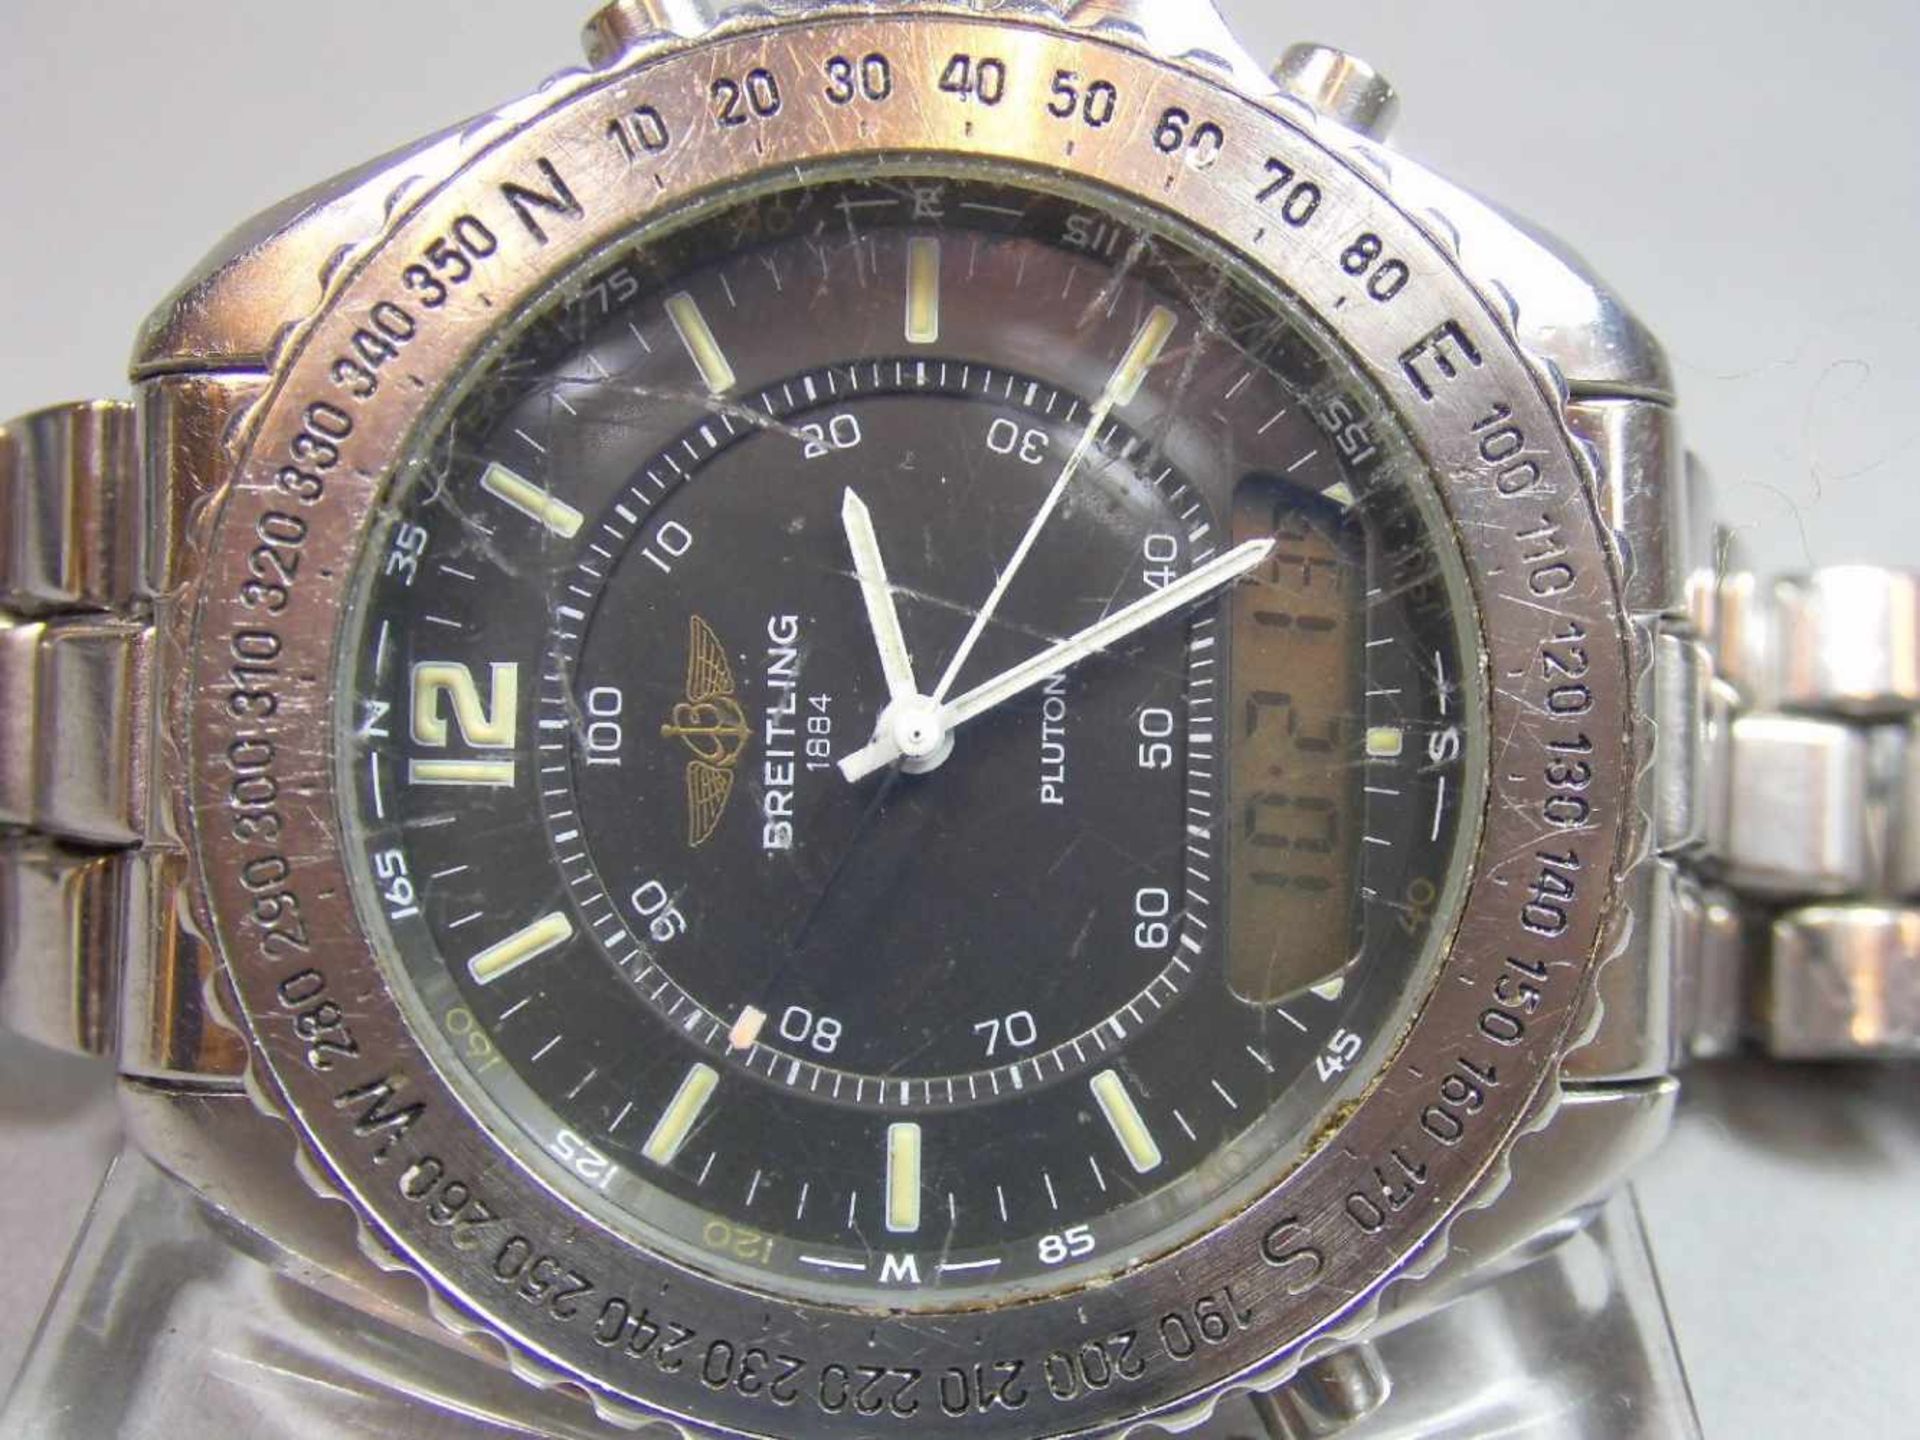 BREITLING "PLUTON" ARMBANDUHR / wristwatch, Quarz-Uhr, Schweiz. Stahlgehäuse mit drehbarer - Image 4 of 9